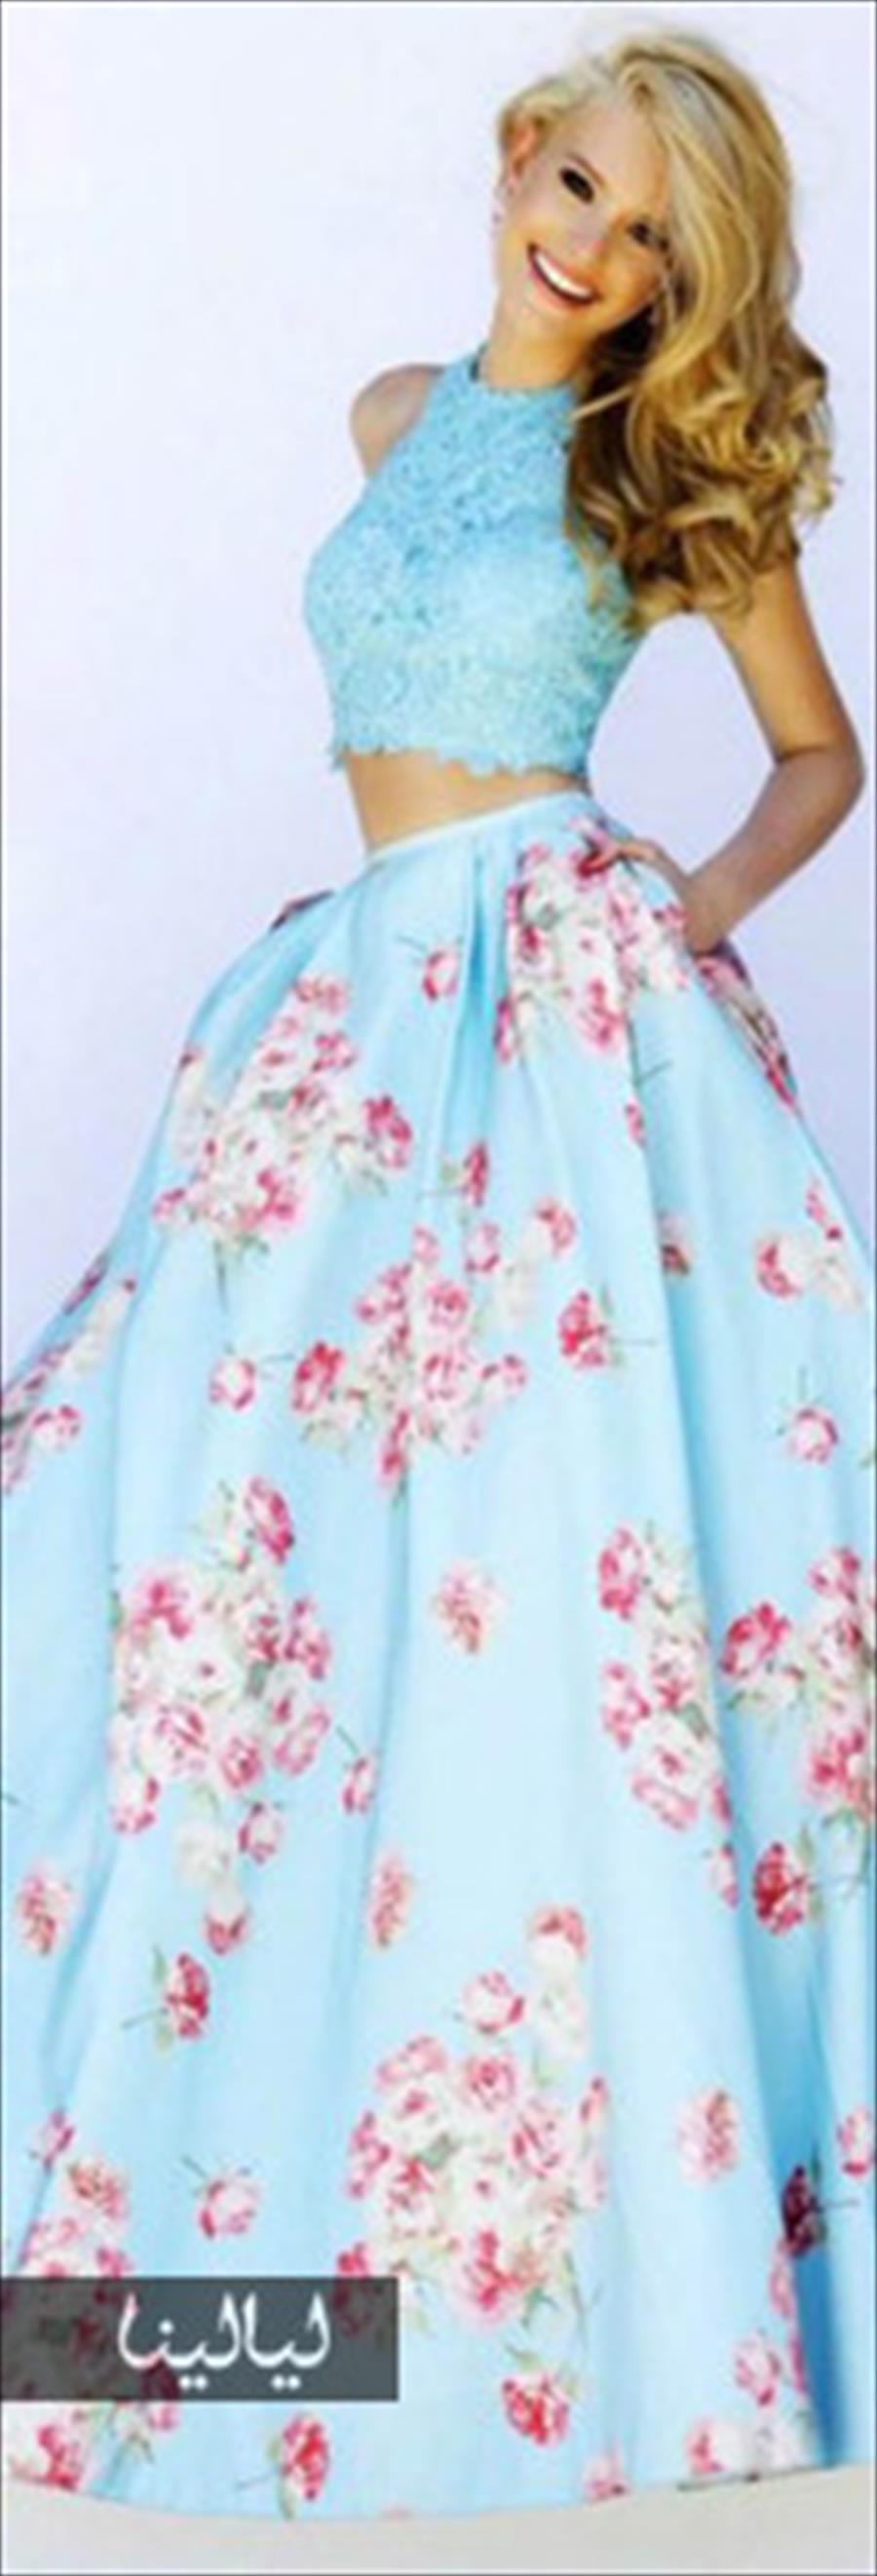 تألقي بفساتين maxi مطبَّعة بالزهور في صيف 2015